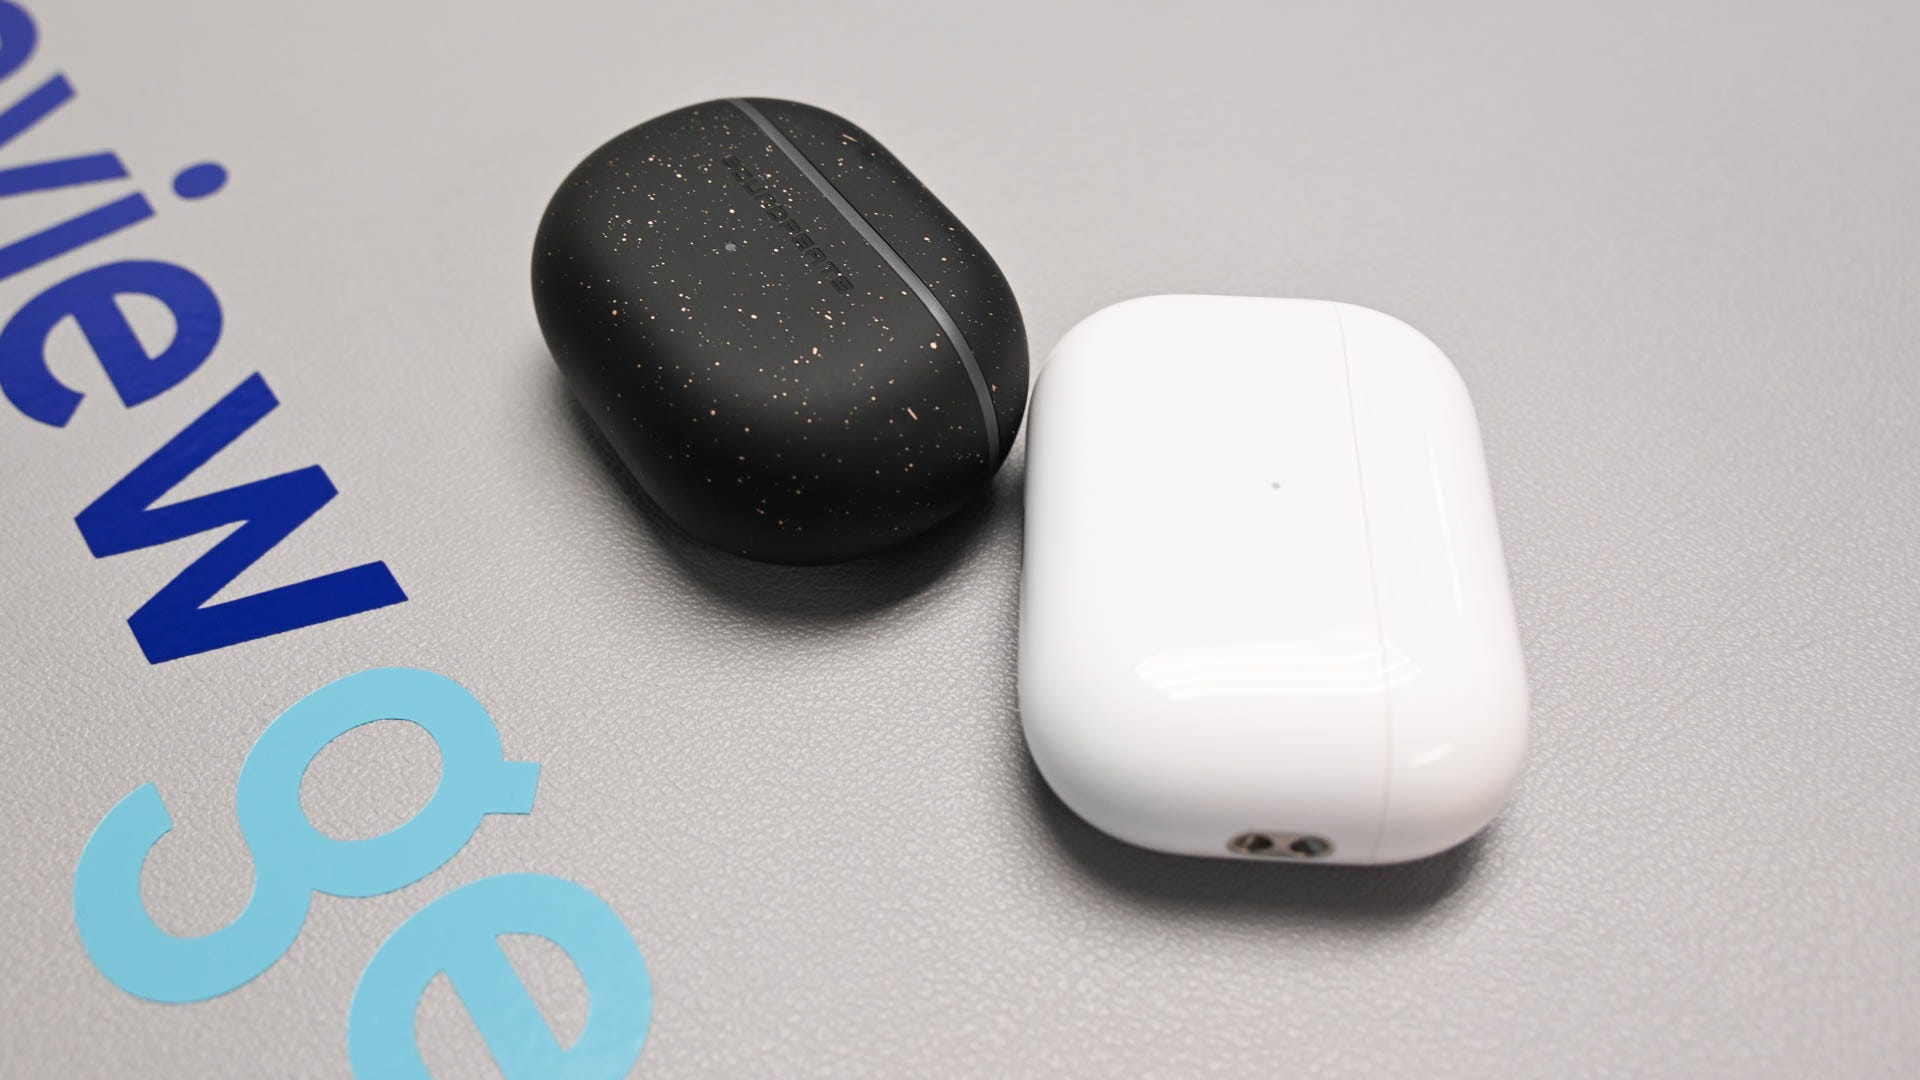 Soundpeats mini pro hs case next to airpods pro 2 case